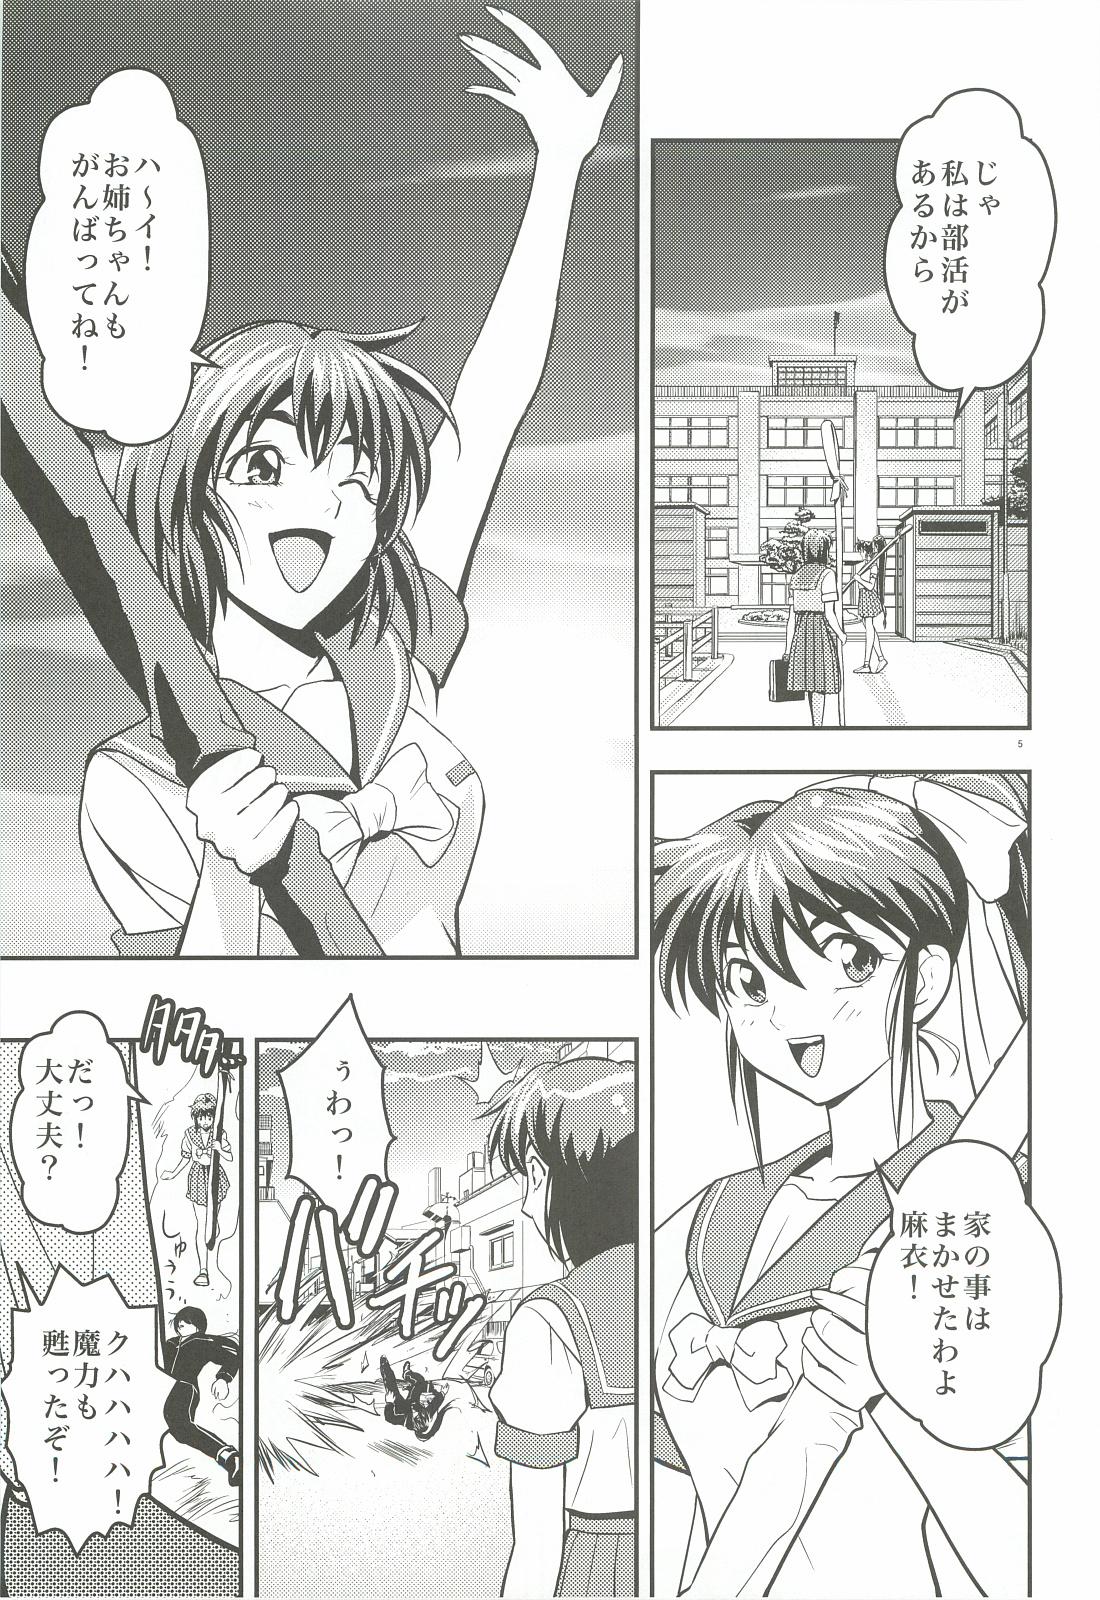 Rica FallenXXangeL 1 Ingyaku no Mai Joukan - Twin angels 19yo - Page 4